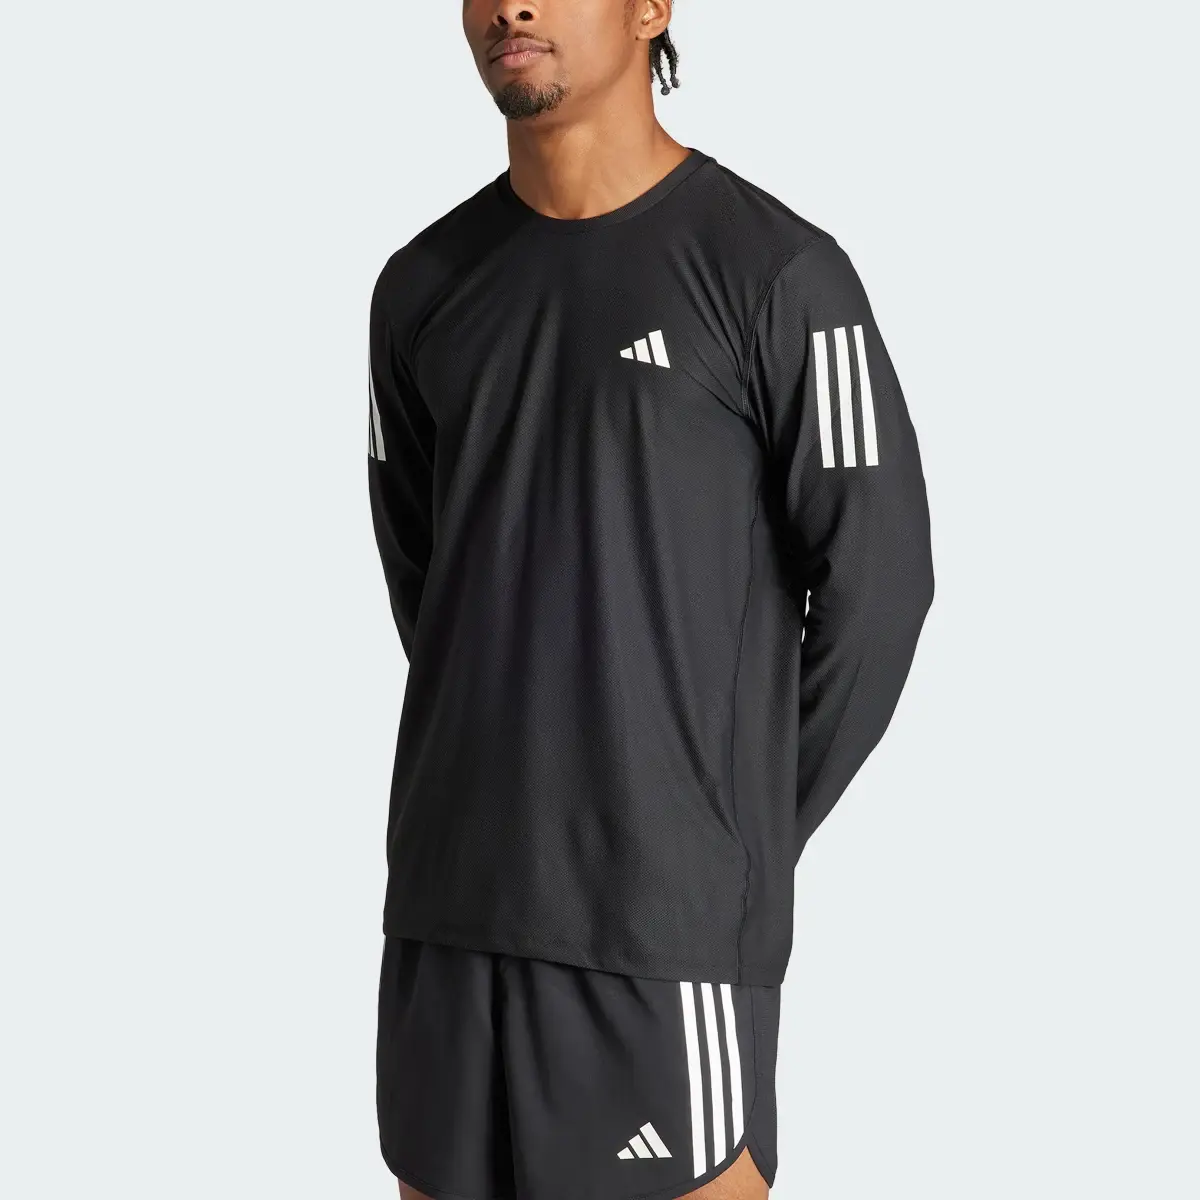 Adidas Own The Run Long Sleeve Long-Sleeve Top. 1